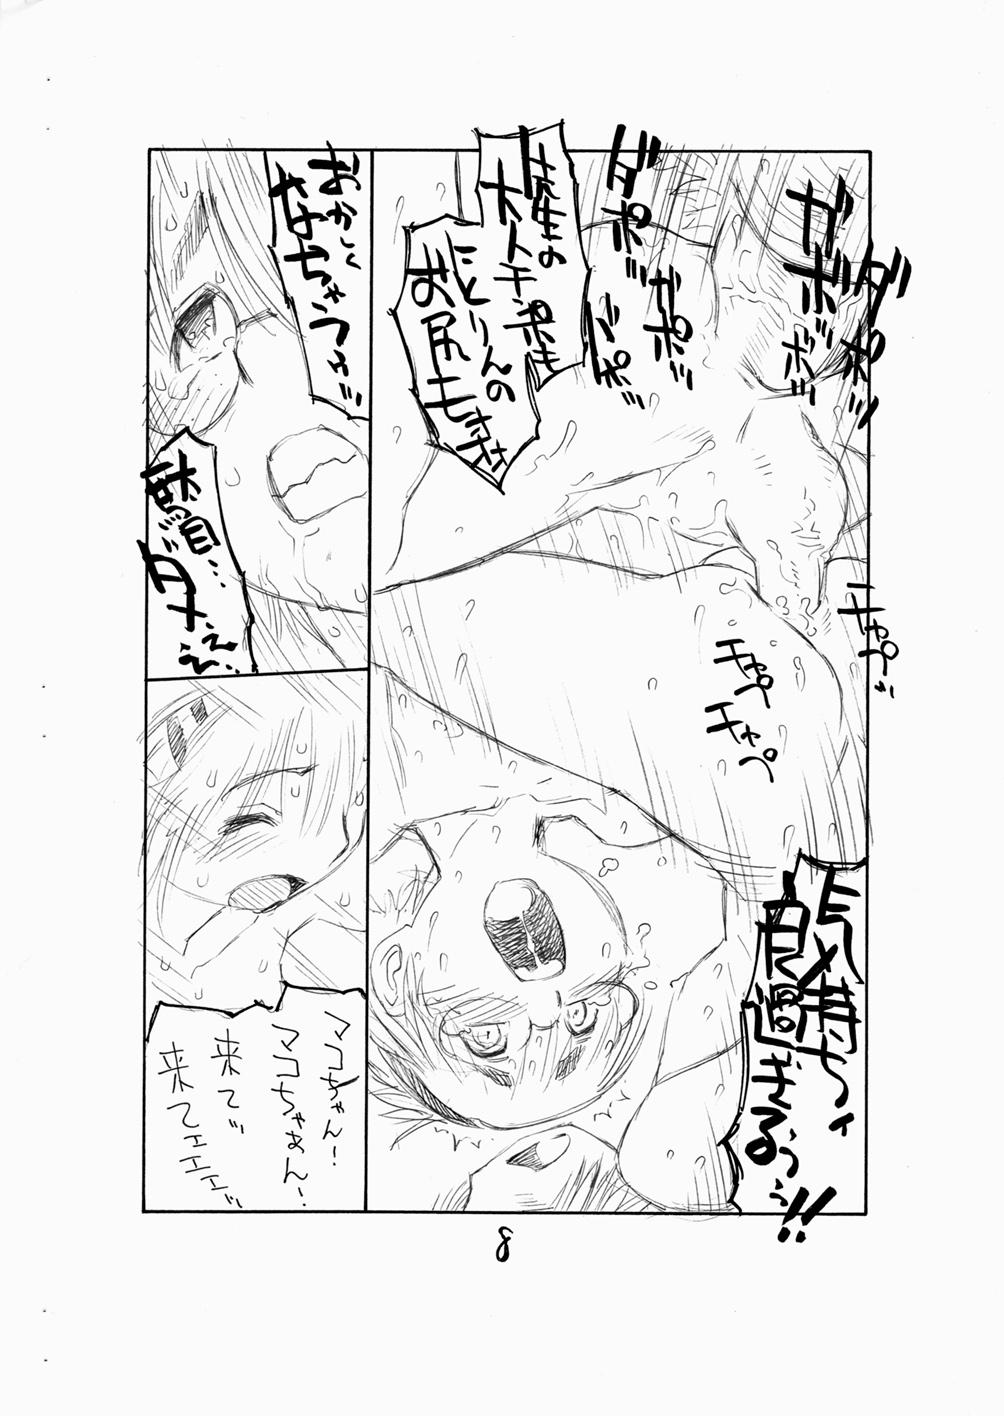 Celebrity Bokutachi Otokonoko 3 - Hourou musuko Satin - Page 10